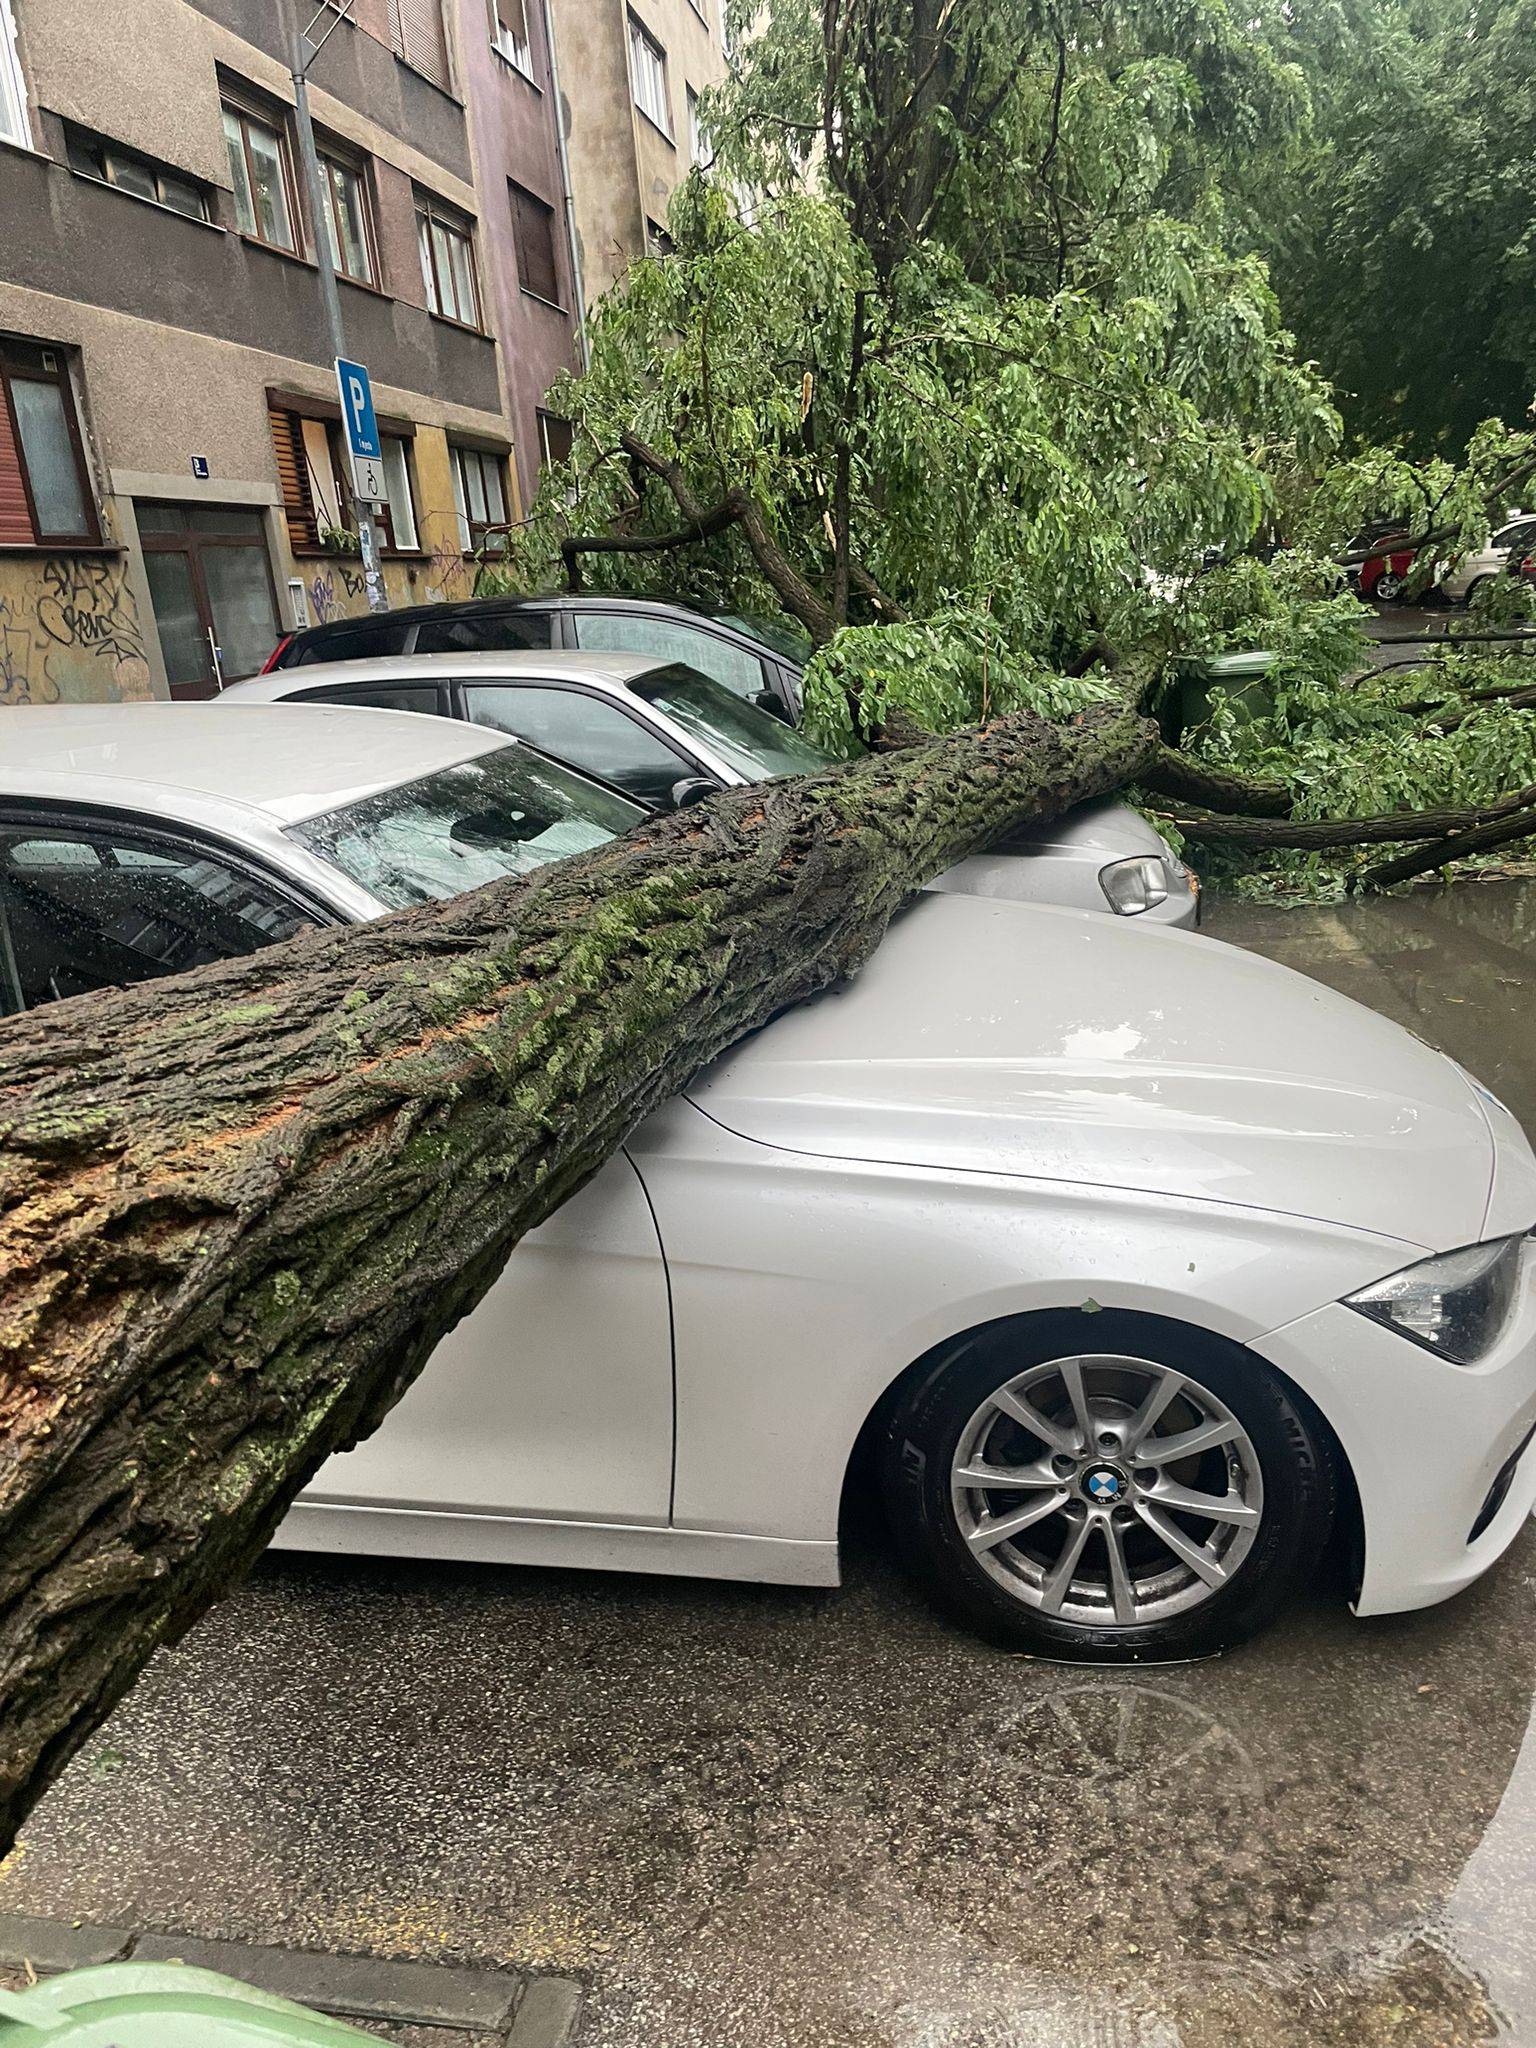 POGLEDAJTE SNIMKU: Vjetar u Zagrebu srušio mega dizalicu!